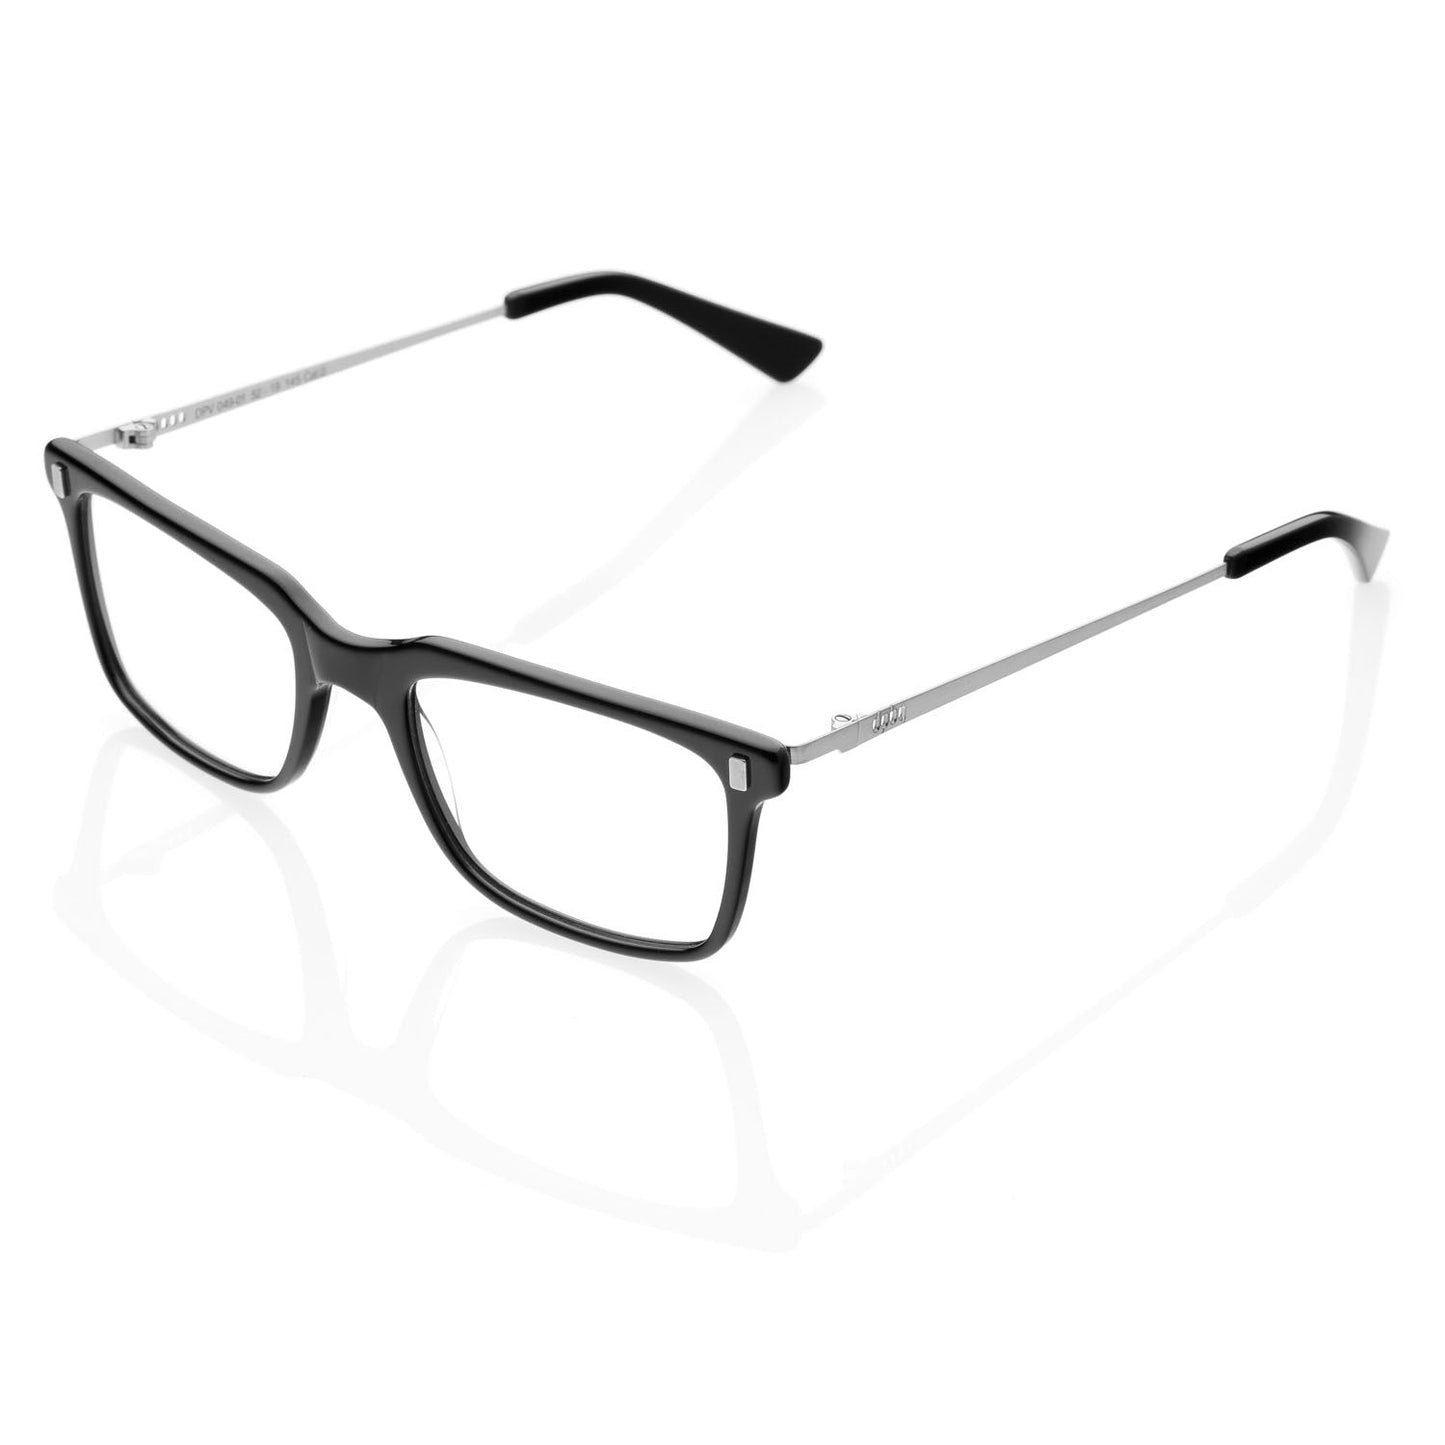 Occhiali da Vista uomo dp69 rettangolari in acetato nero  DPV049-01 dp69 Eyewear